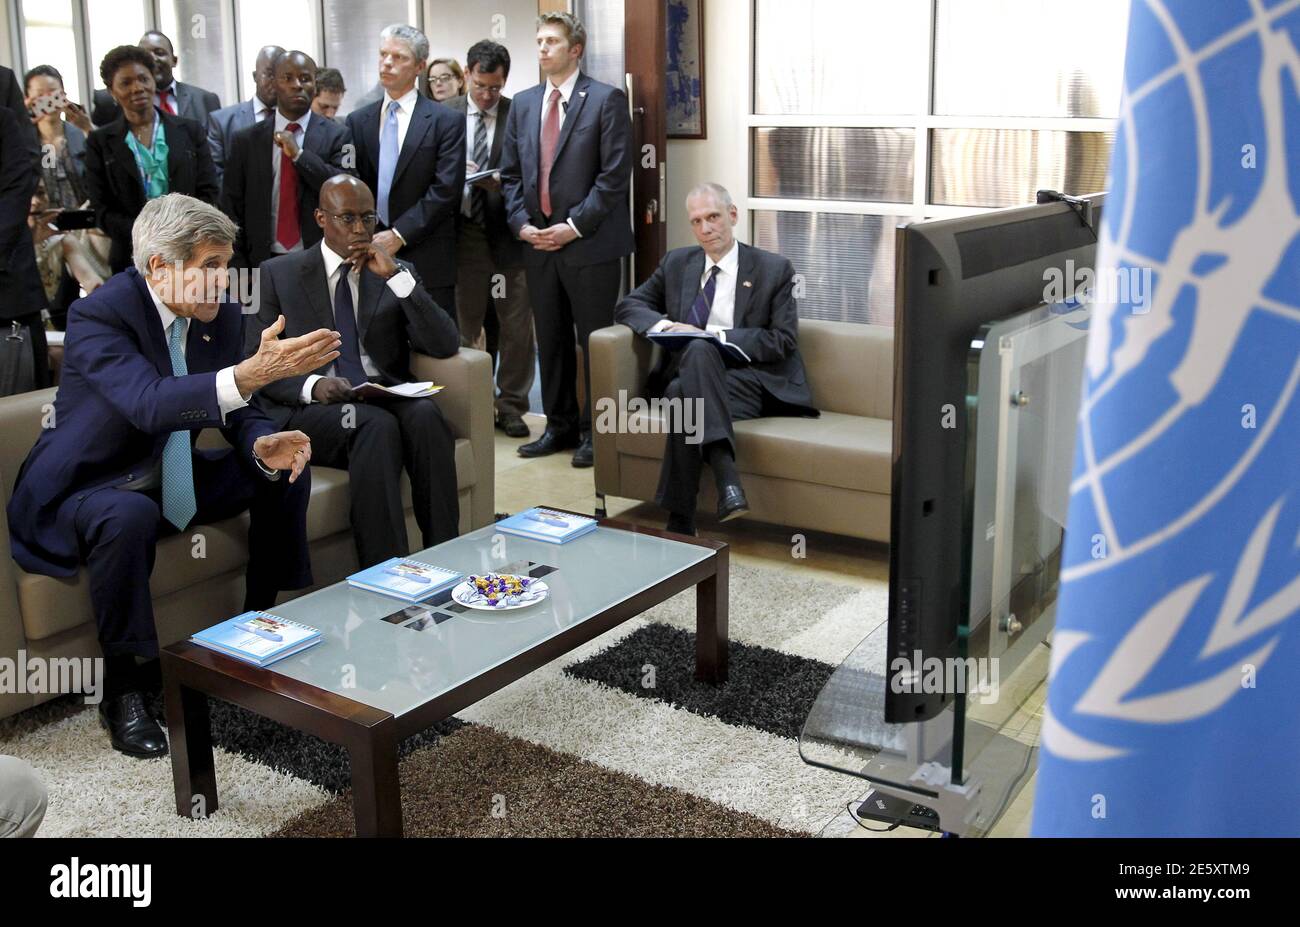 El Secretario de Estado de los Estados Unidos, John Kerry (L), habla con los refugiados en el campamento de Dadaab a través de Skype en las oficinas del Alto Comisionado de las Naciones Unidas para los Refugiados (ACNUR) en Nairobi, Kenia, el 4 de mayo de 2015. Kerry y el presidente de Kenia, Uhuru Kenyatta, discutieron el lunes maneras de contrarrestar la amenaza del grupo militante al Shabaab que mató a 148 personas en una universidad de Kenia el mes pasado. Con él está Raouf Mazou (C), Representante del ACNUR en el país, y Robert Godec (R), el Embajador de los Estados Unidos en Kenia. REUTERS/Thomas Mukoya Foto de stock